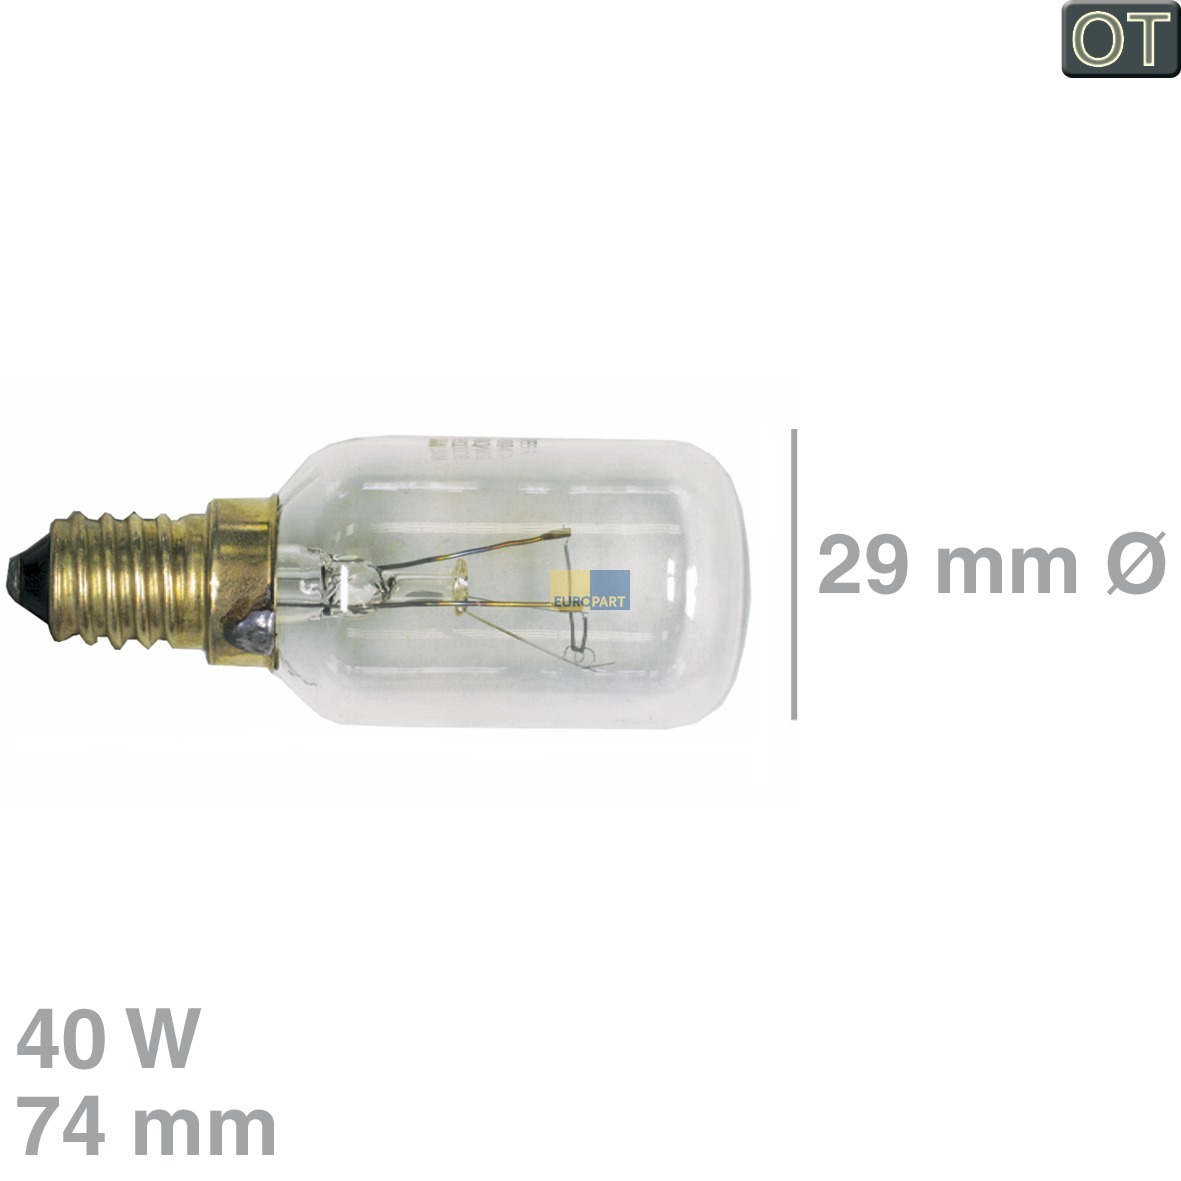 bis 300°C Röhrenlampe 29 mm Ø Backofen-/Dunstabzugshaubenlampe mit Gewinde E14 